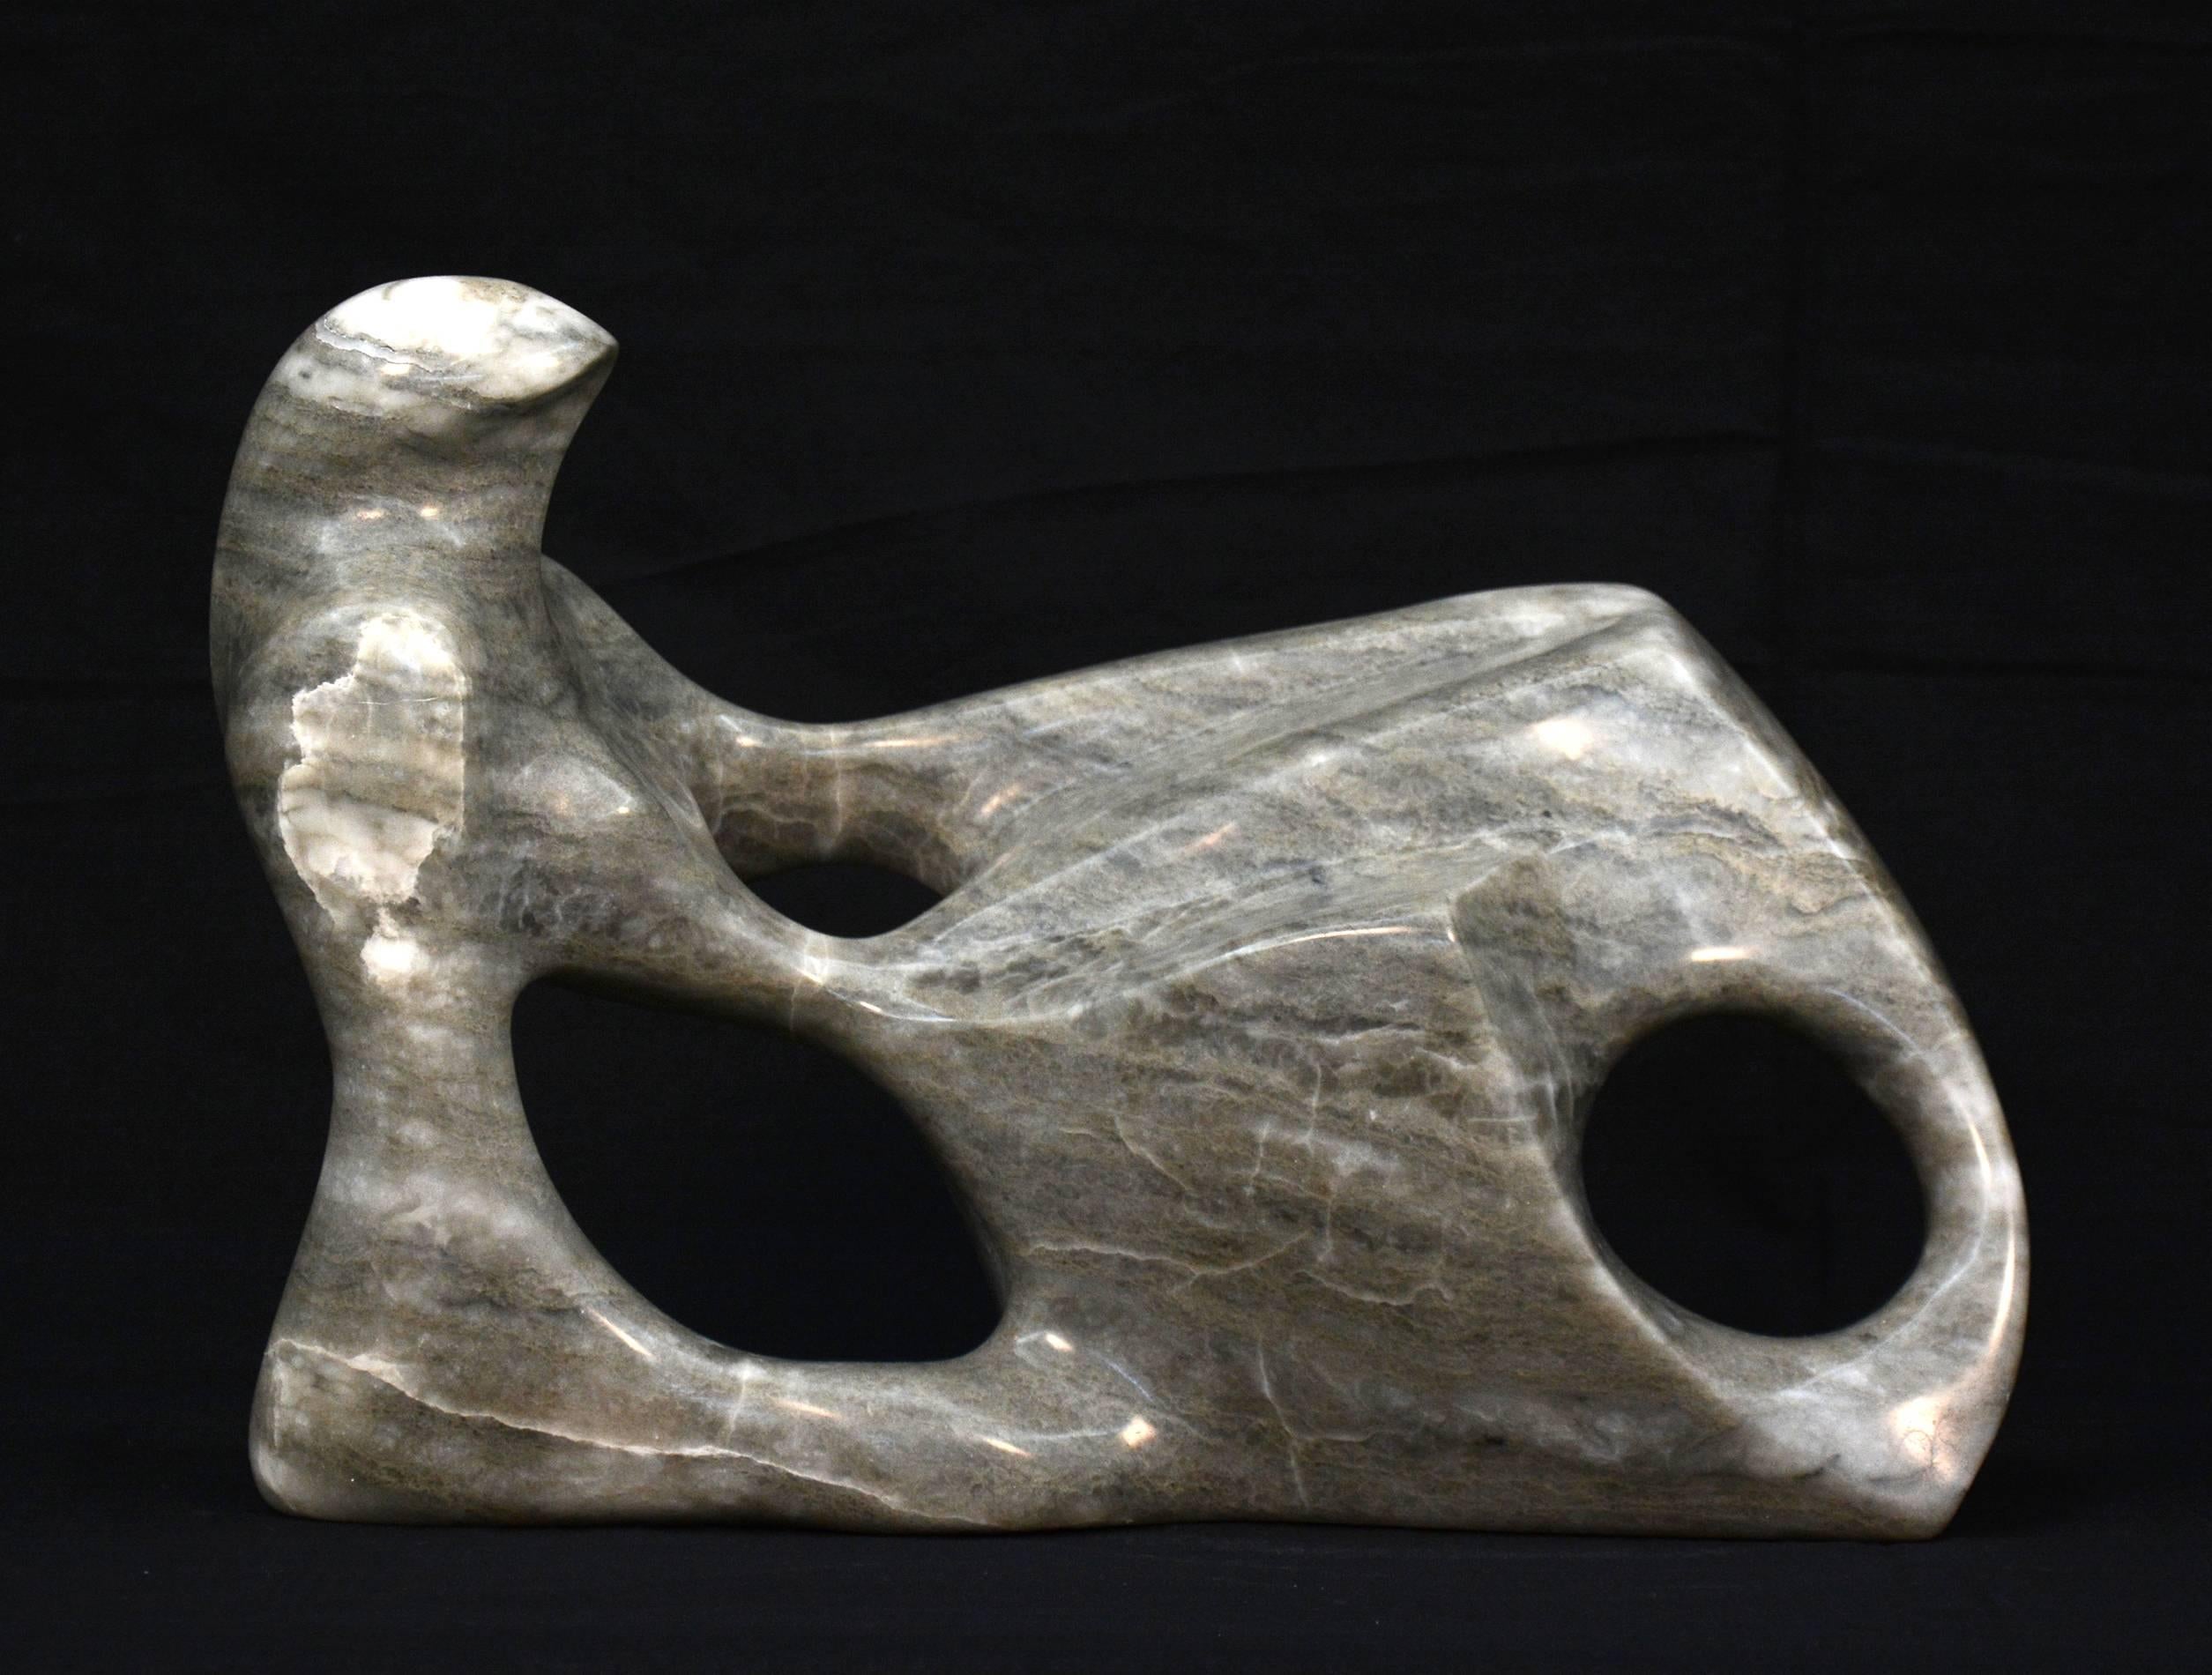 Jeremy Guy Figurative Sculpture – Liegende Figur aus Alabaster – glatt, Stein, figurativ, Tischskulptur